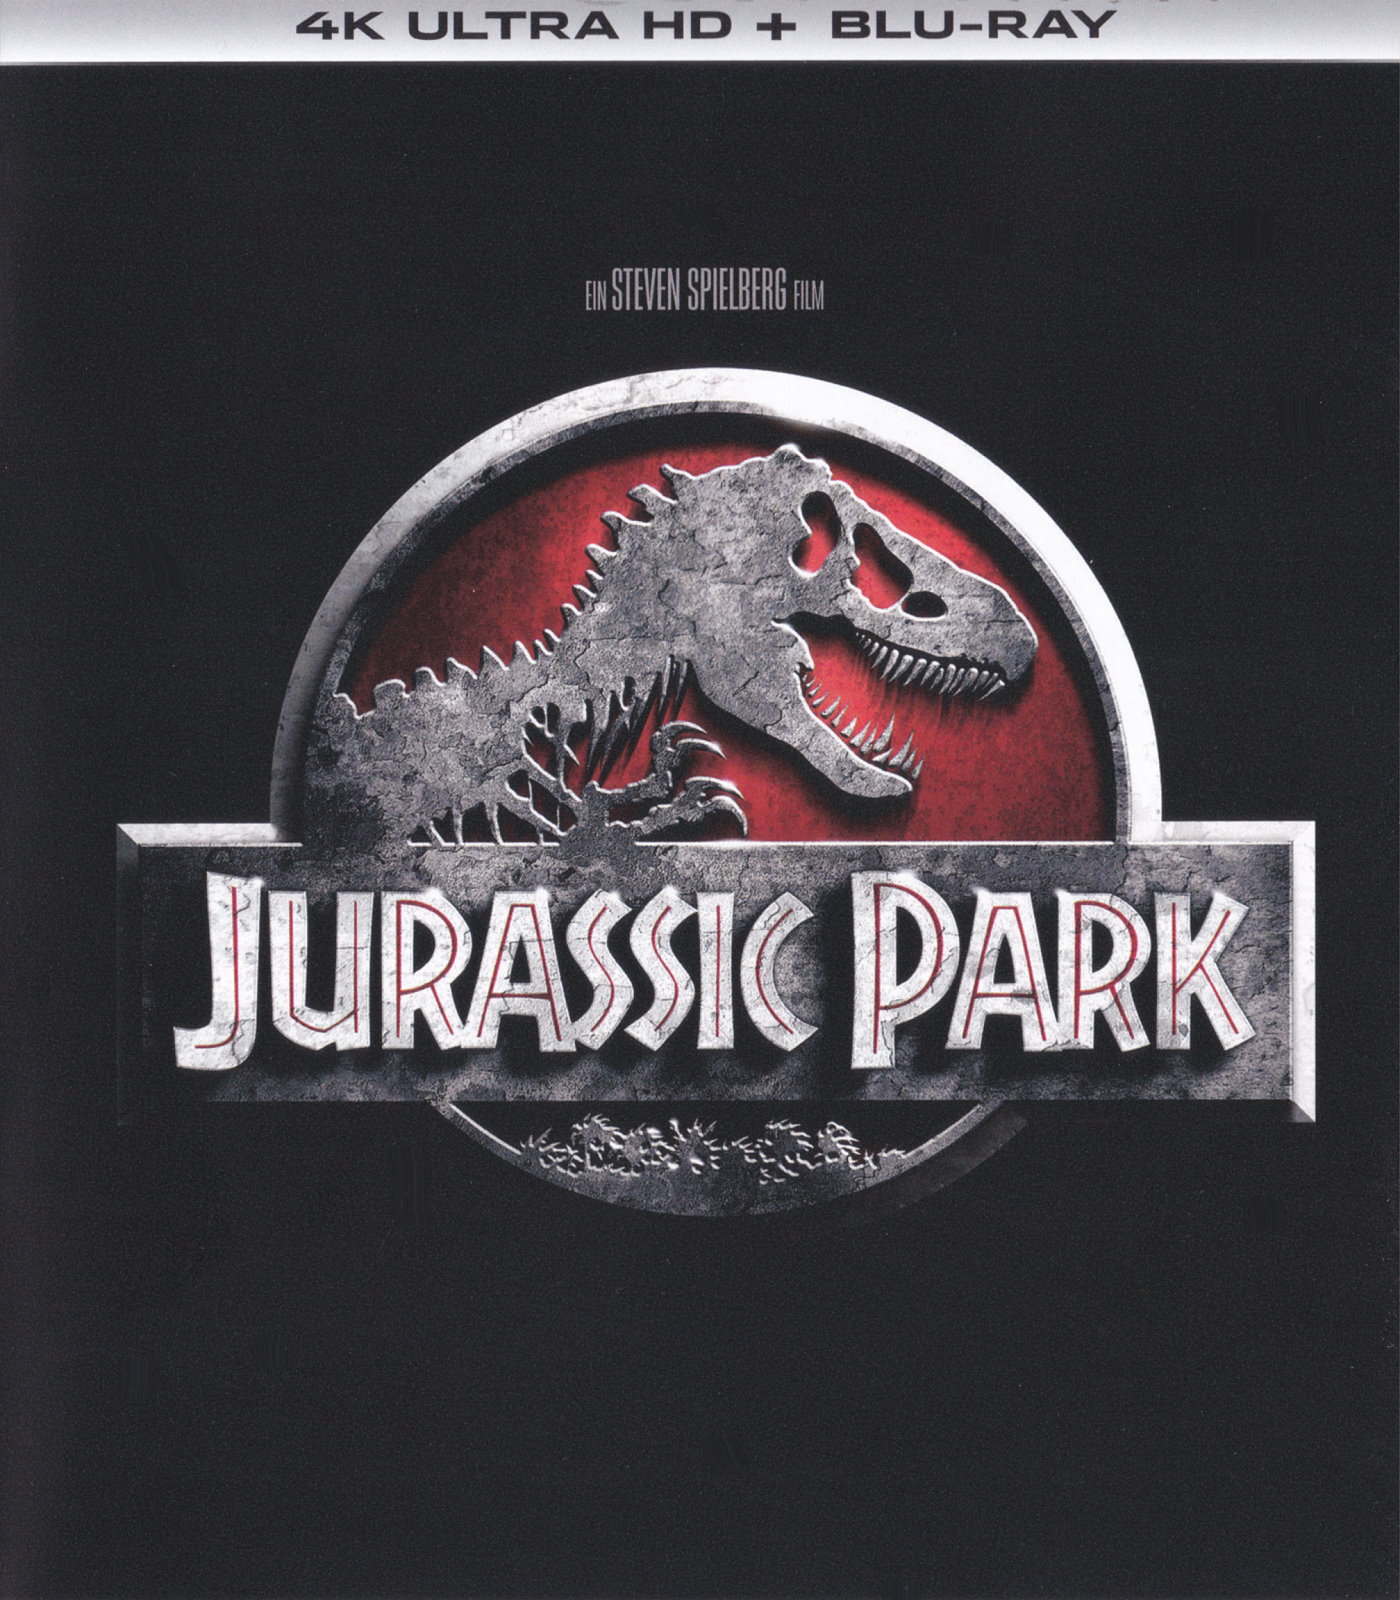 Cover - Jurassic Park.jpg